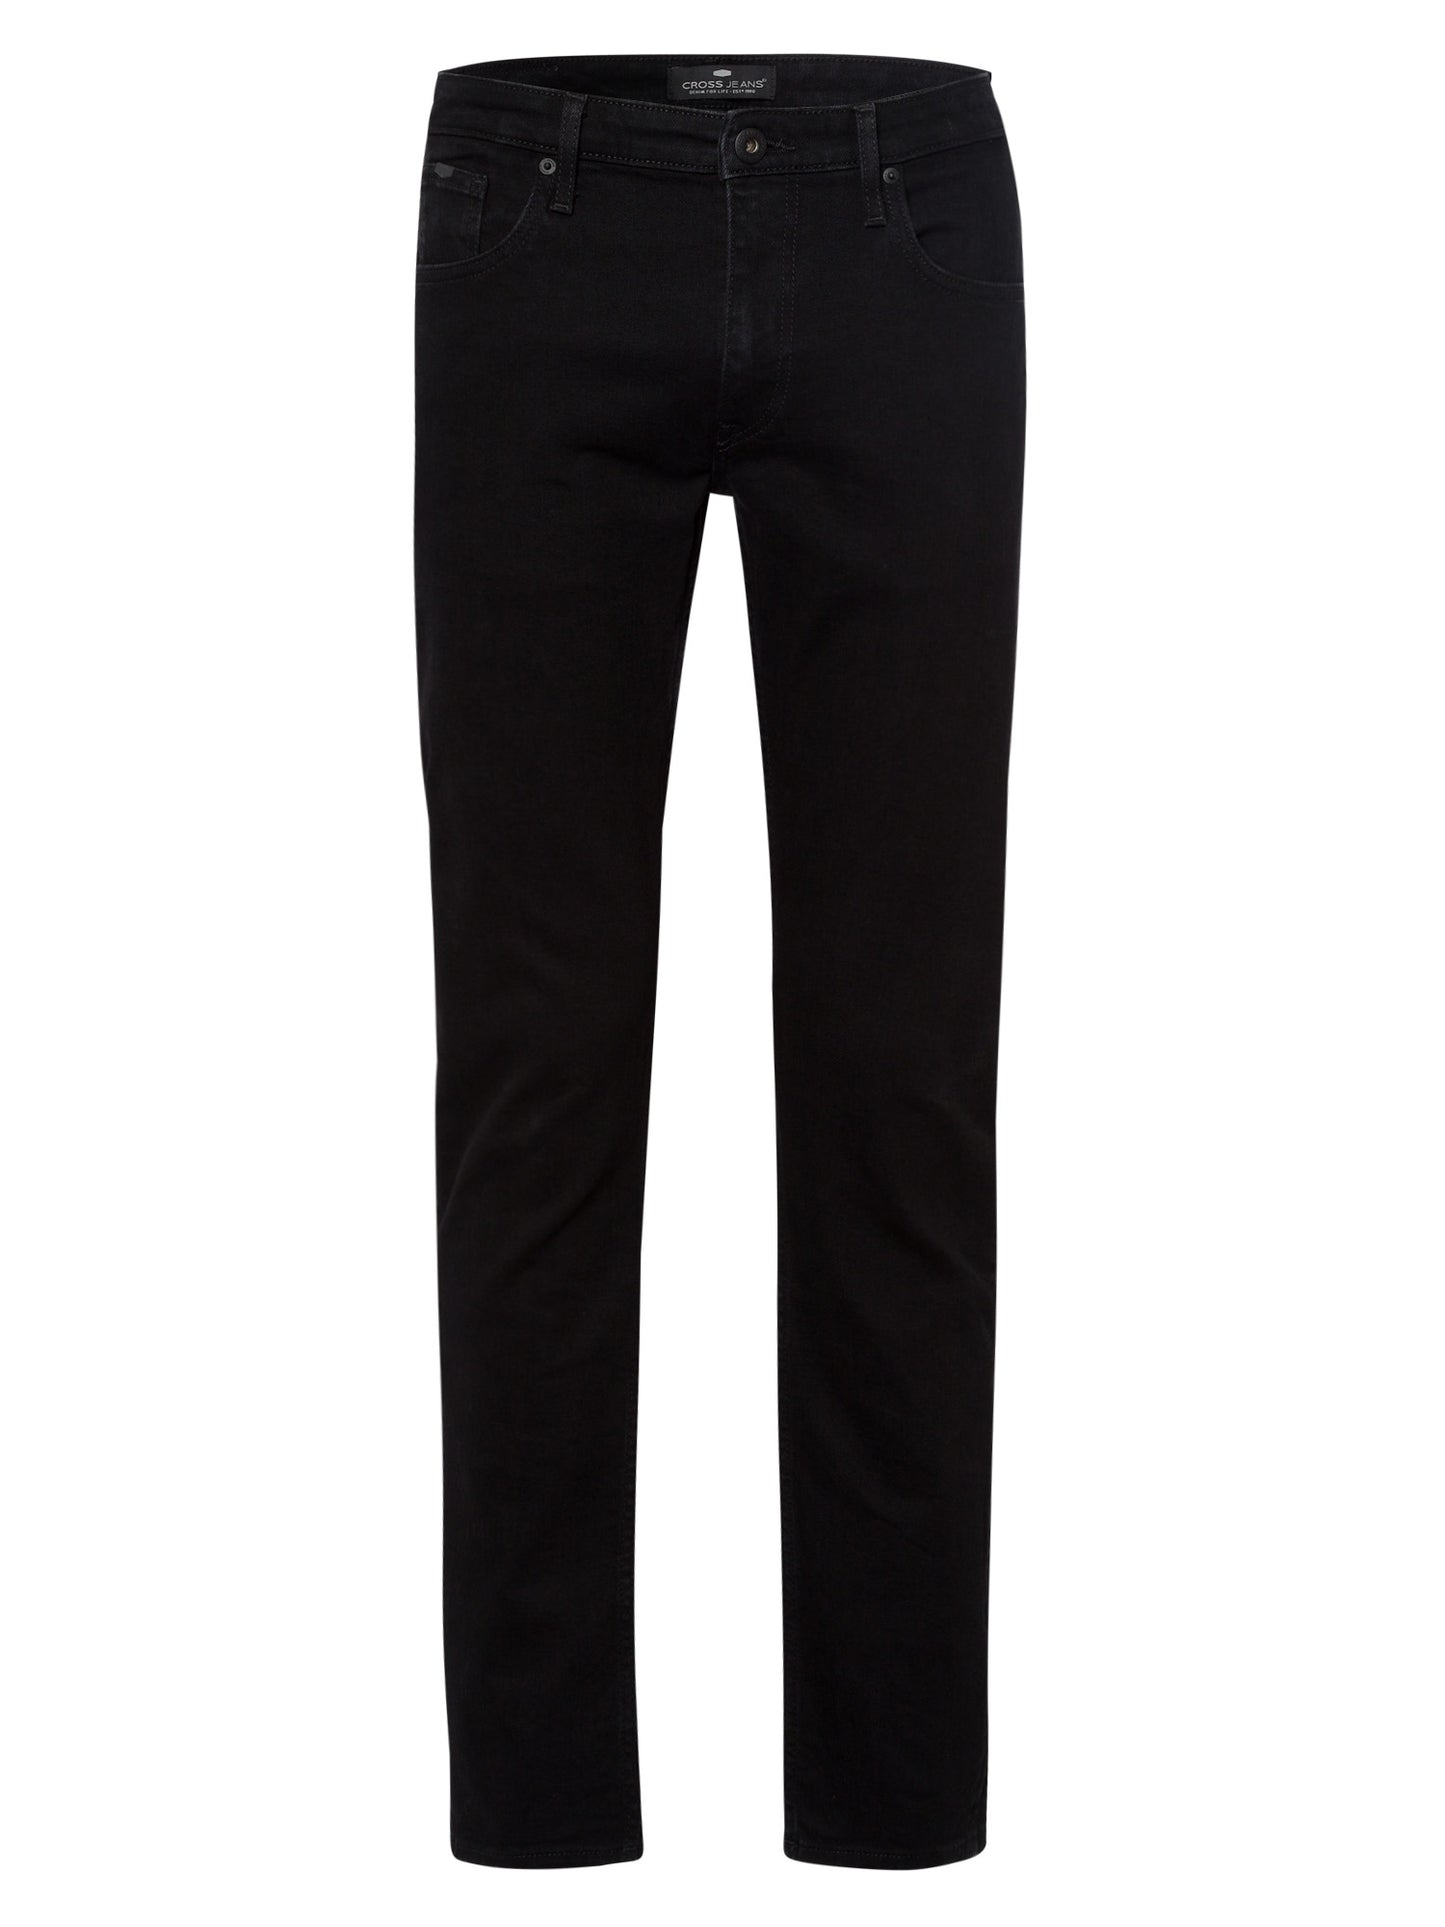 Damien Herren Jeans Slim Fit Regular Waist Straight Leg schwarz.